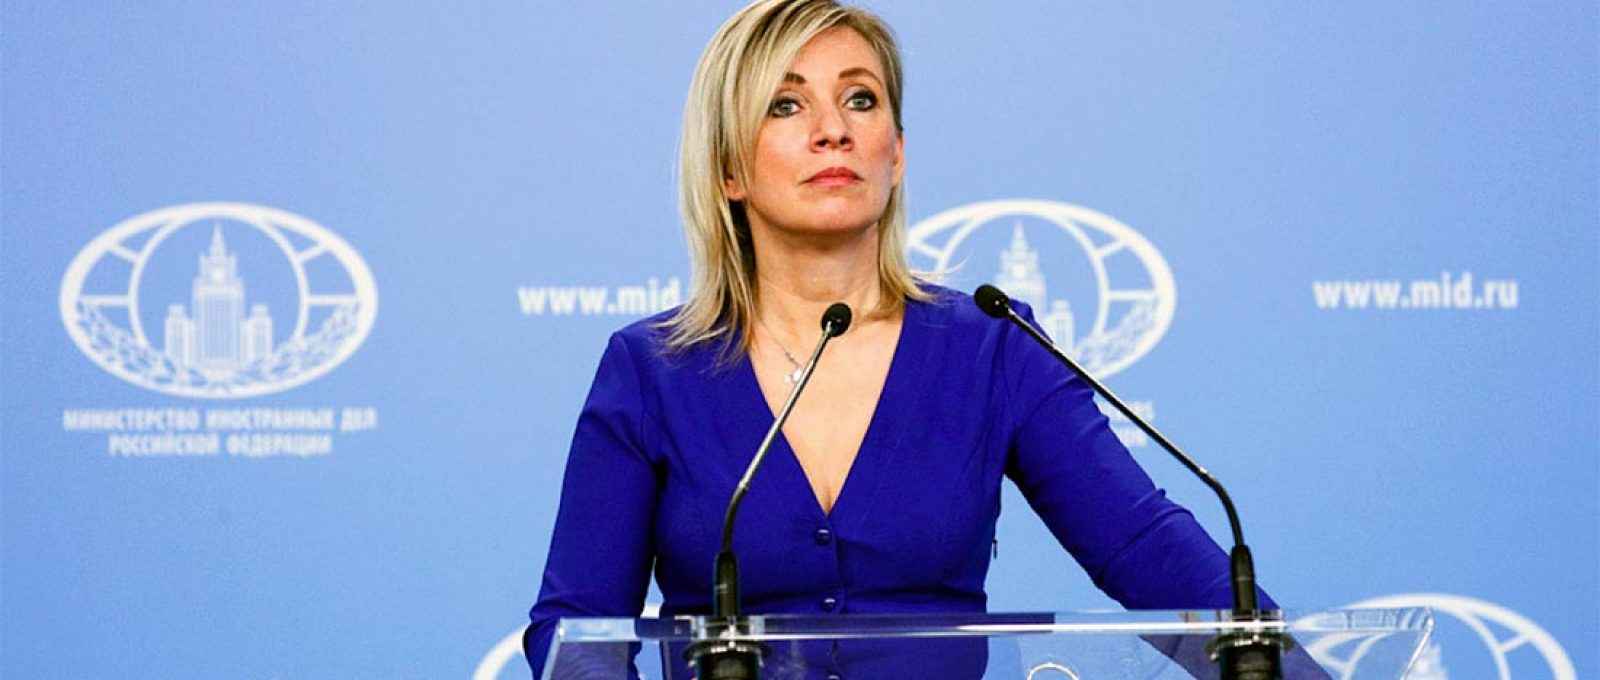 Porta-voz do Ministério das Relações Exteriores da Rússia, Maria Zakharova (Foto: Ministério das Relações Exteriores da Rússia/Tass).